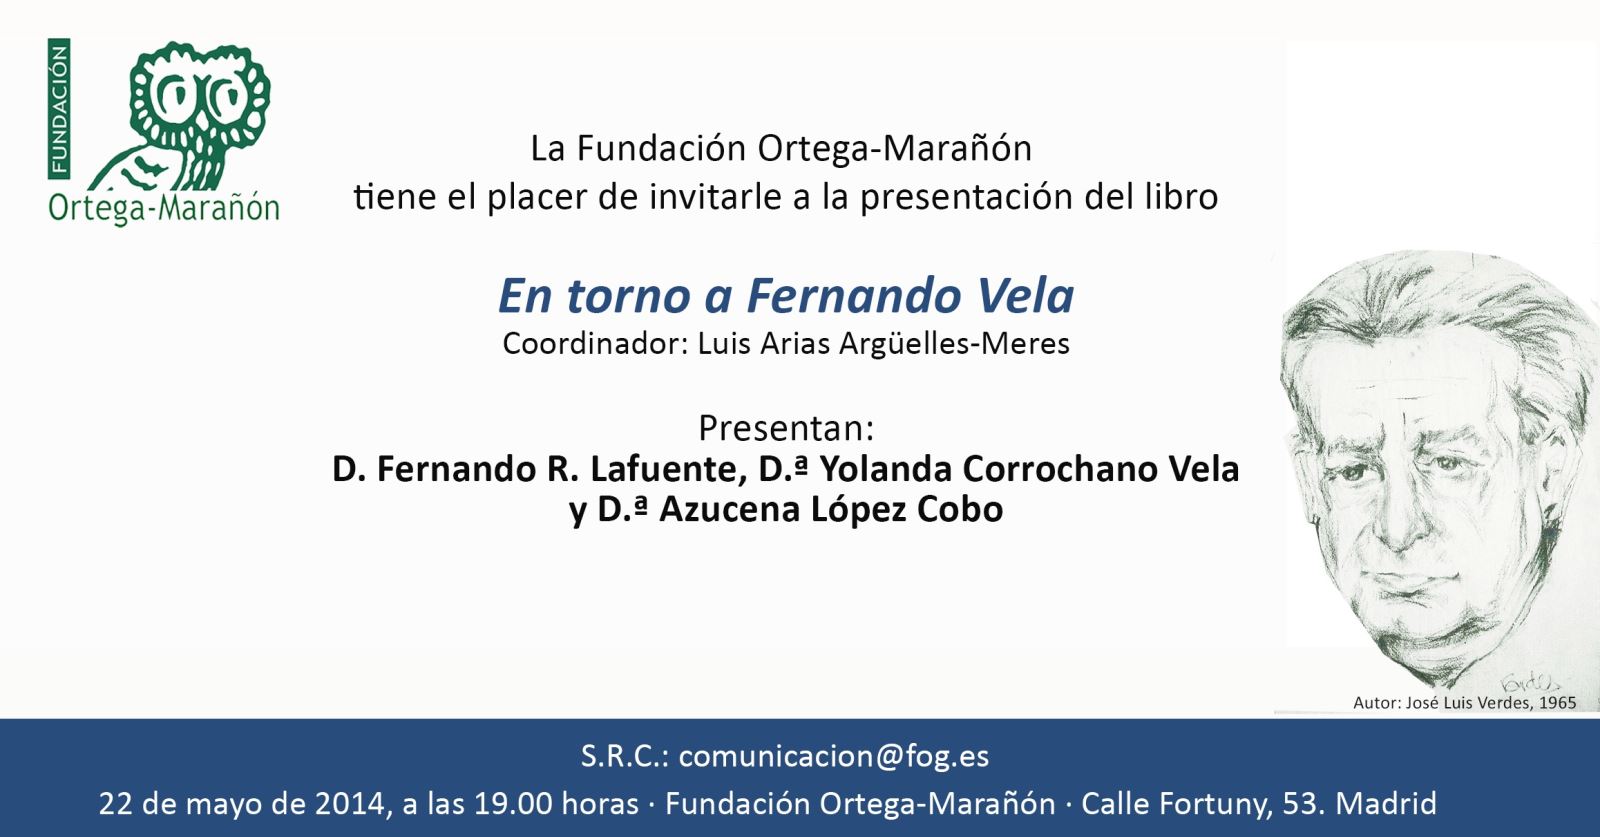 La Universidad de Oviedo presenta el libro "En torno a Fernando Vela"